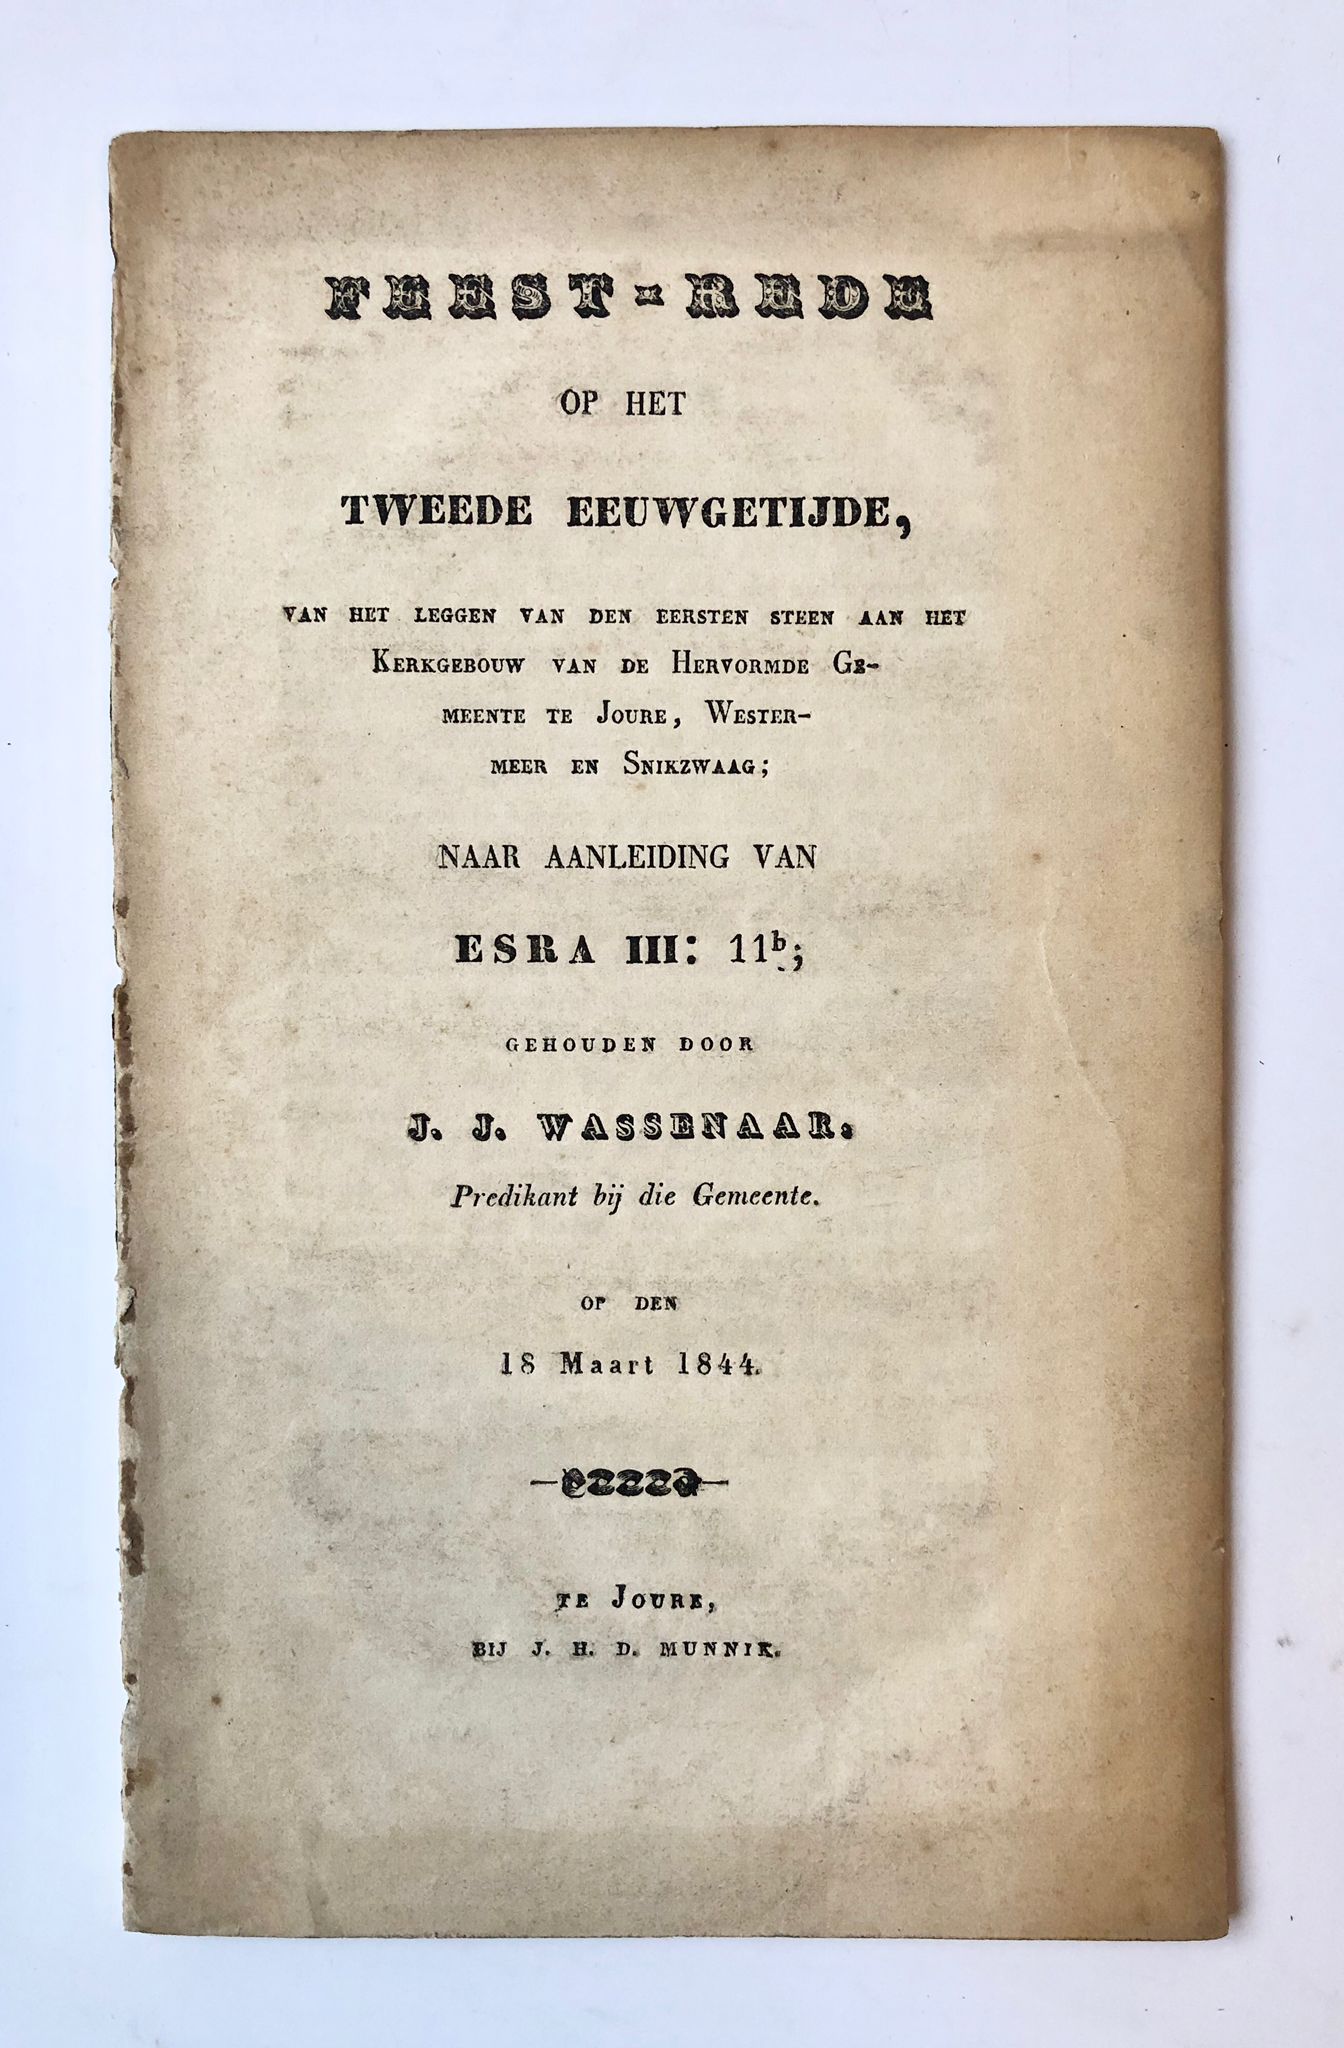 [Friesland, Joure] Feest-rede op het tweede Eeuwgetijde, van het leggen van den eersten steen aan het Kerkgebouw van de Hervormde Gemeente te Joure, Westermeer en Snikzwaag; naar aanleiding van Esra 3, 11b; gehouden door J. J. Wassenaar op den 18 Maart 1844, Bij J. H. D. Munnik, Te Joure, 28 pp.